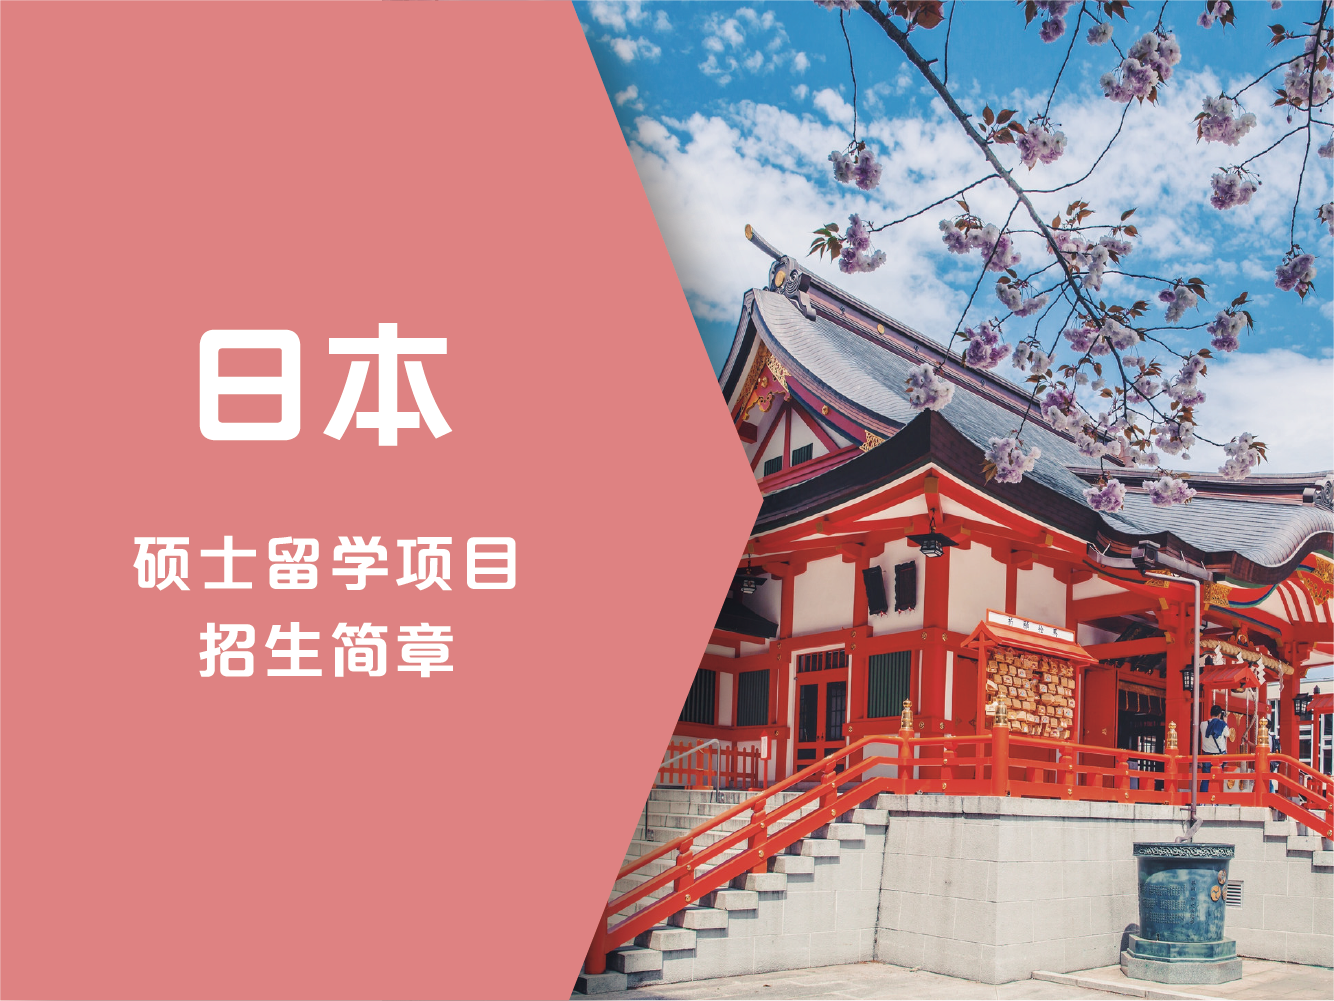 纽业国际教育日本硕士留学项目招生简章图片